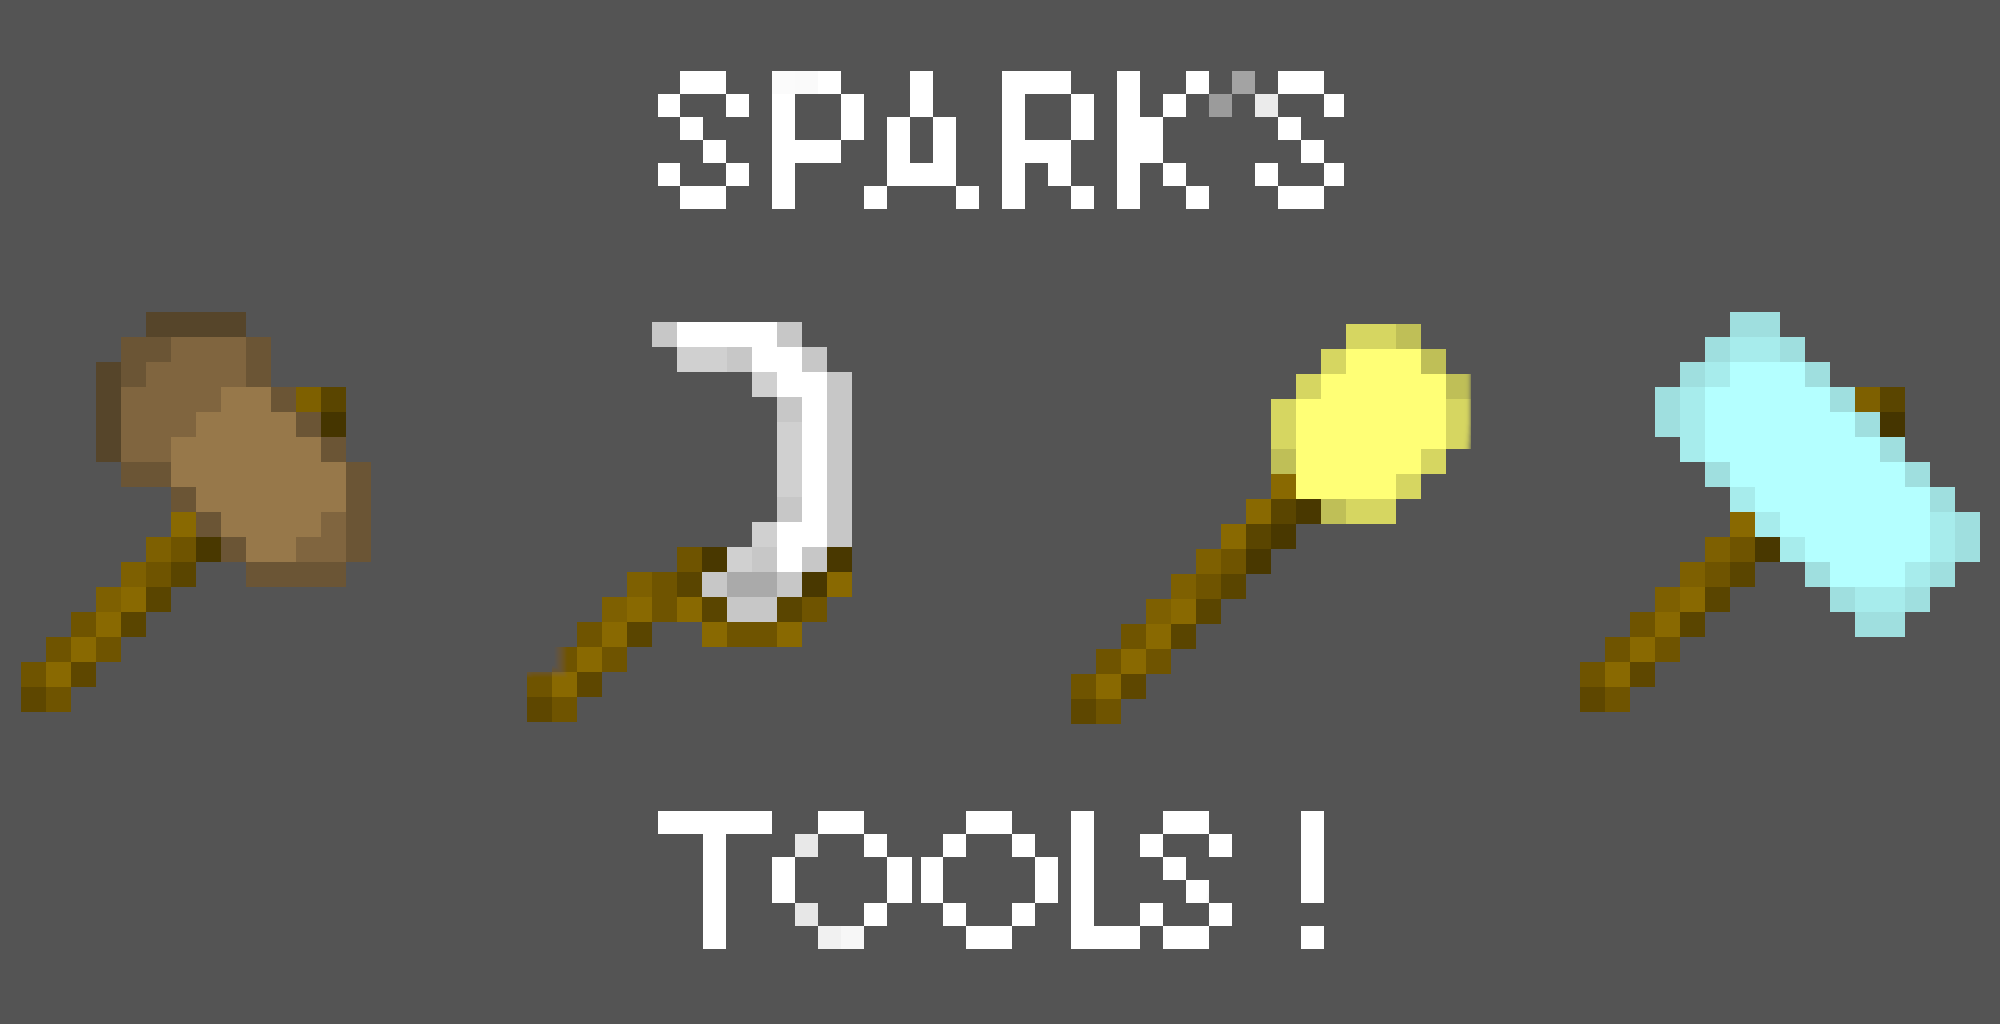 Spark tools. Sparks Hammers 1.12.2. Sparks Hammers 1.12.2 улучшения. Инструменты из МАЙНКРАФТА. Sparks Hammers 1.12.2 крафты.